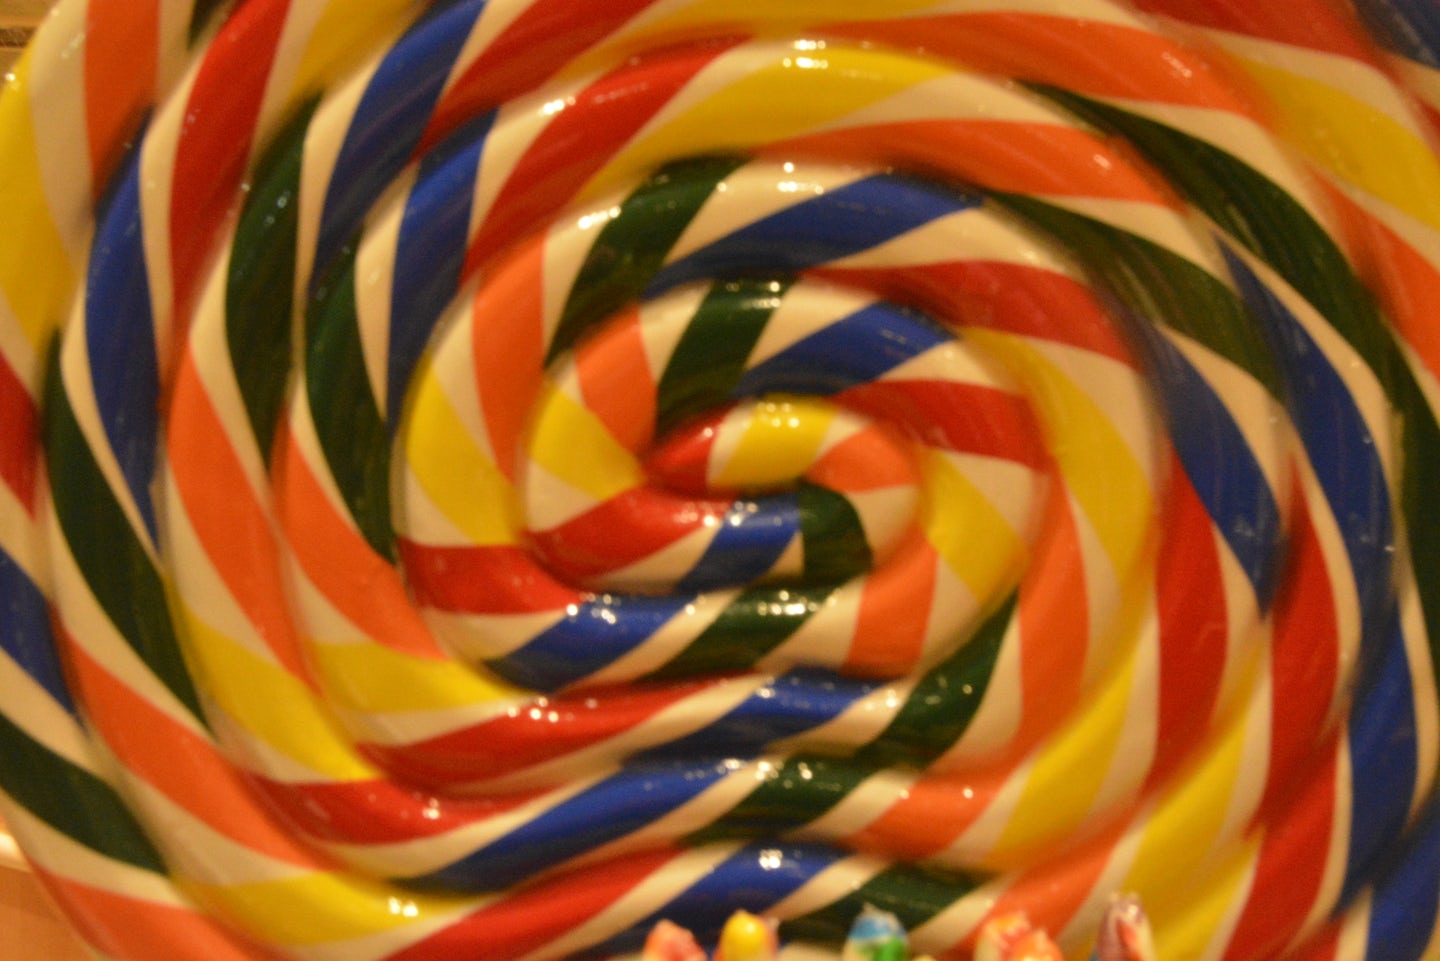 Giant lollipop in the sweet shop